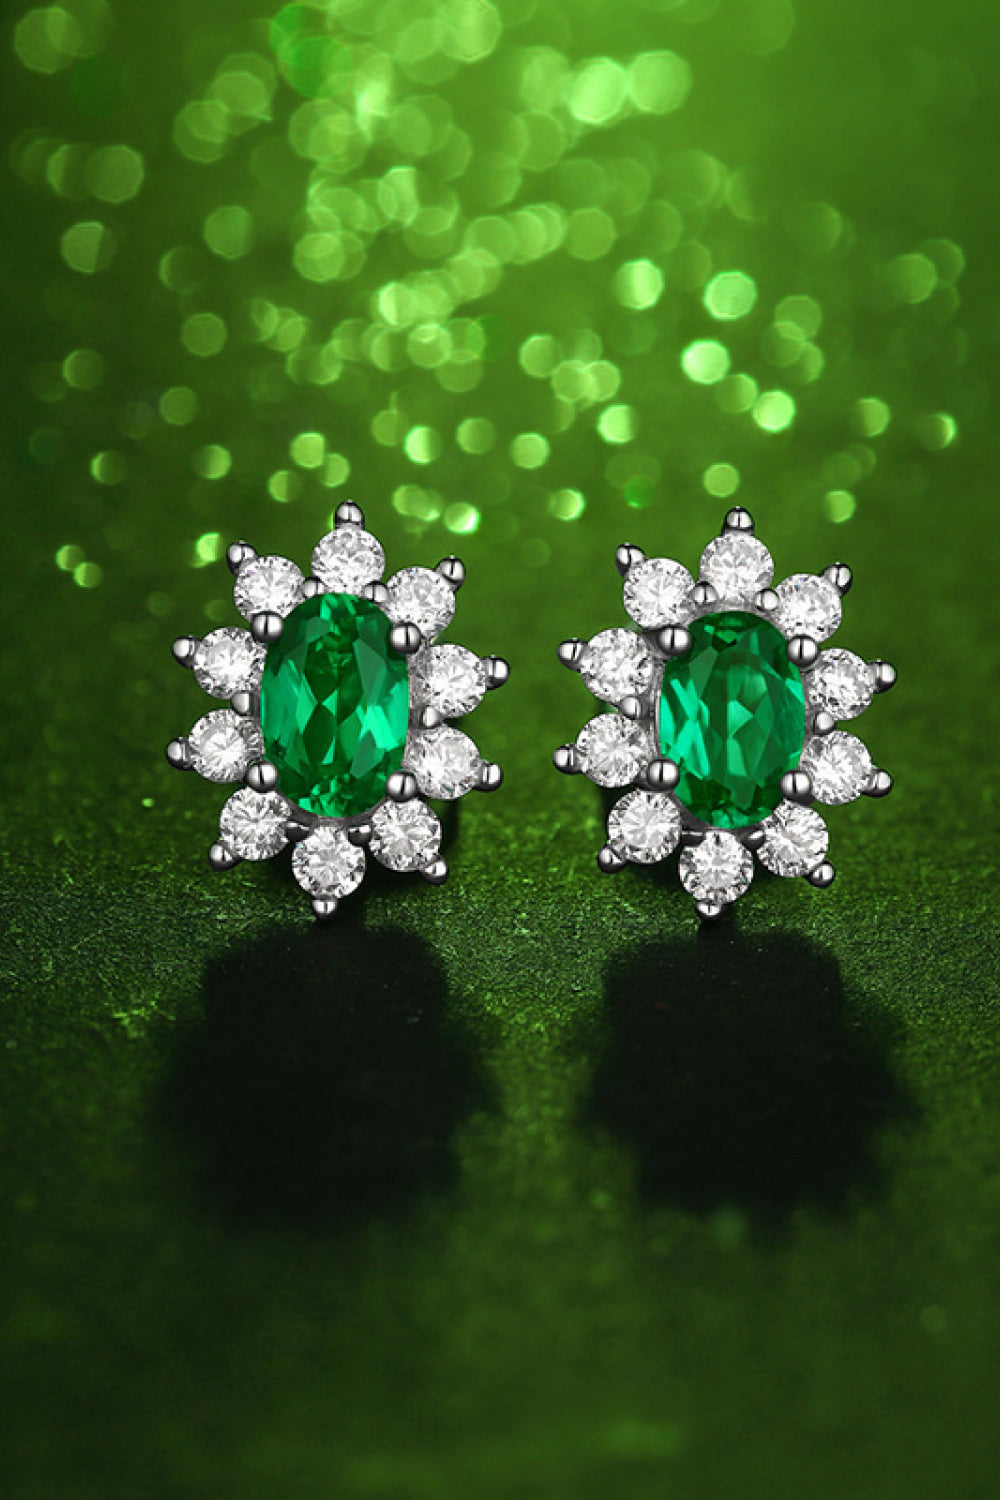 1 Carat Lab-Grown Emerald Stud Earrings - bertofonsi